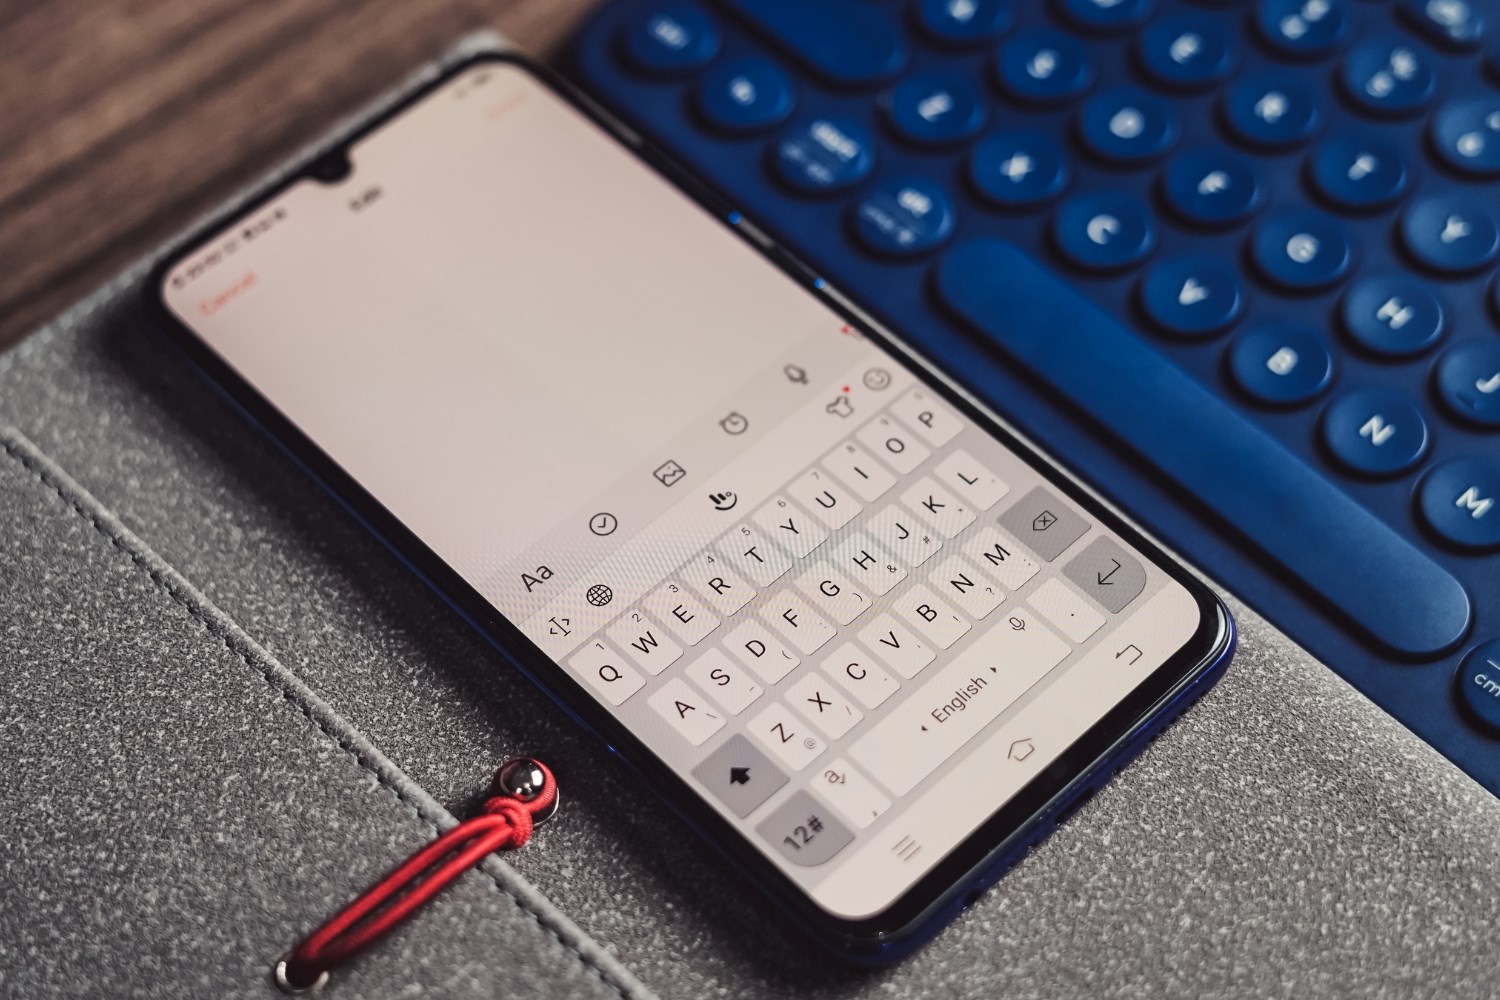 Xiaomi Phone Keyboard Language Change: Tutorial